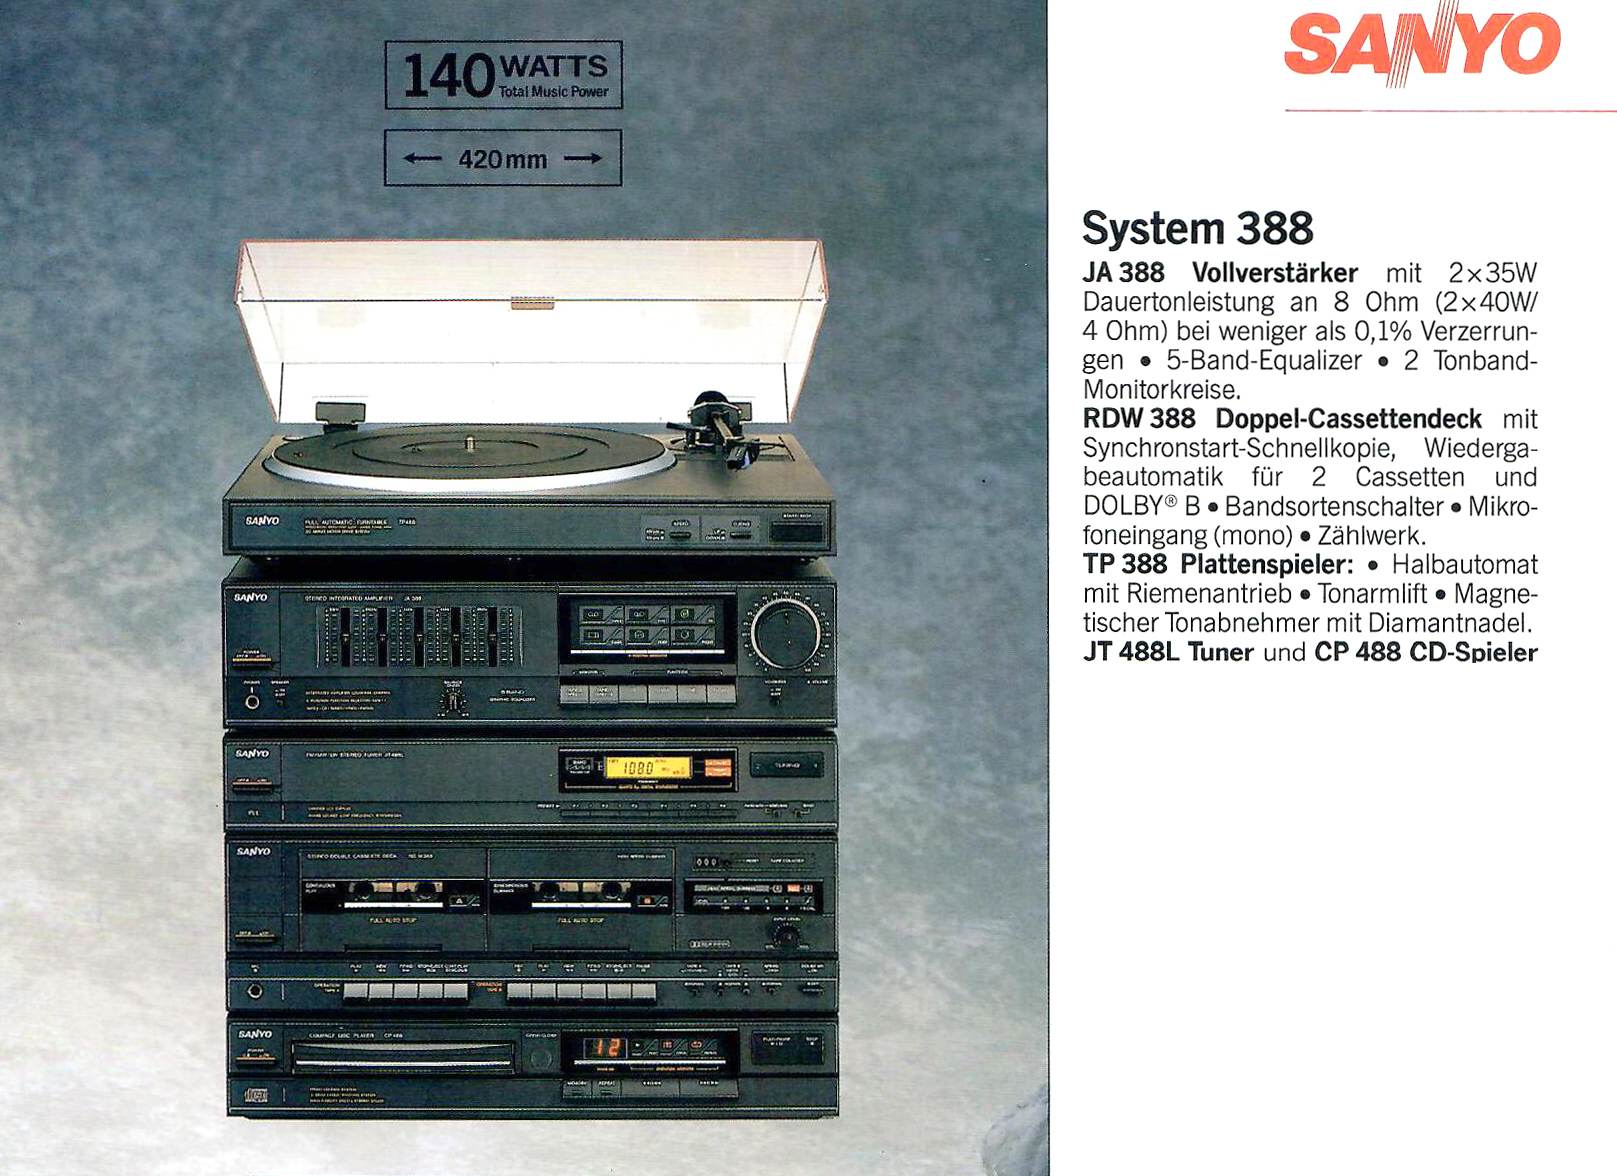 Sanyo System 388-Prospekt-1989.jpg